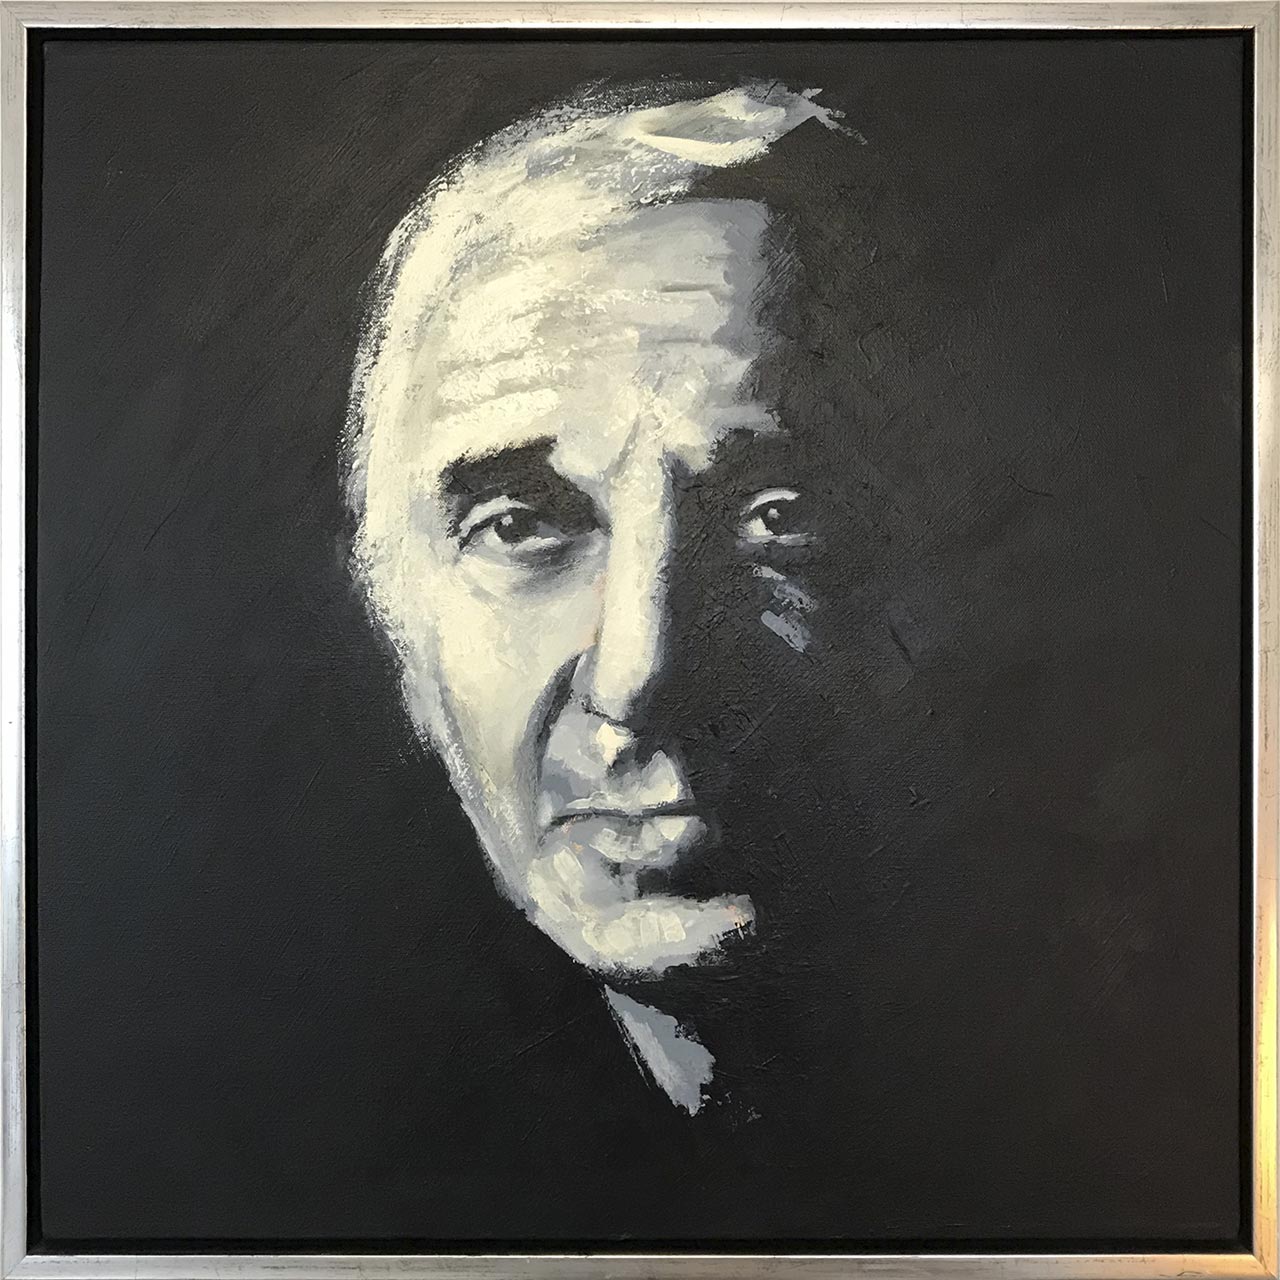 Portrætmaleriet af Charles Aznavour er udført af Peter Simonsen, ekspressionist portrætkunstner